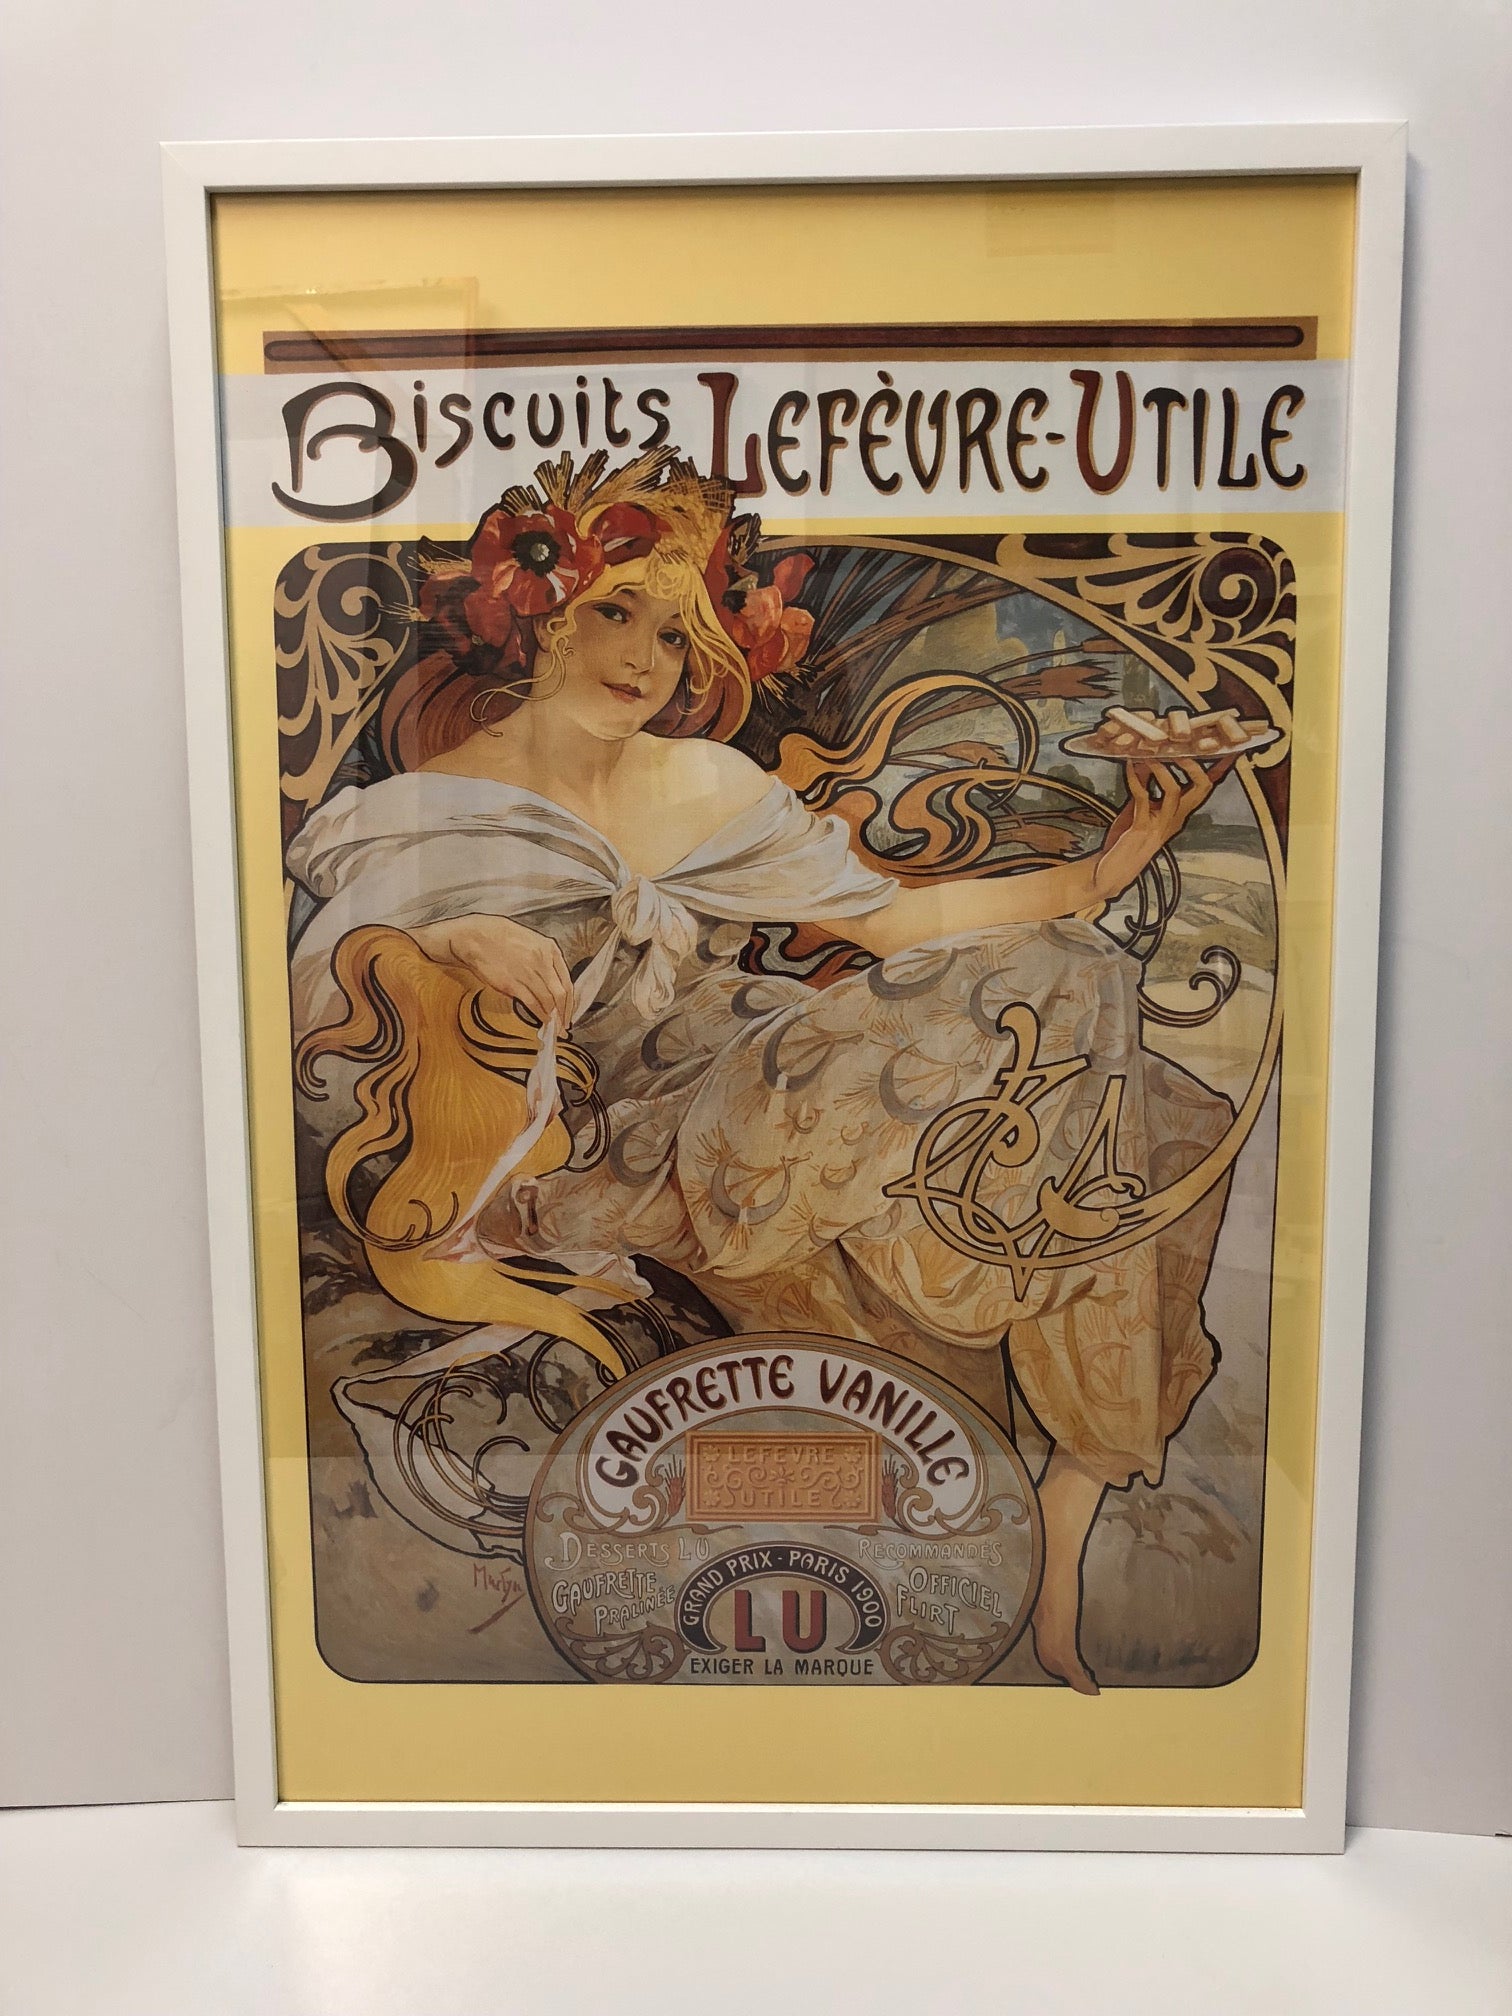 Vintage Poster "Biscuits Lefevre-Utile"